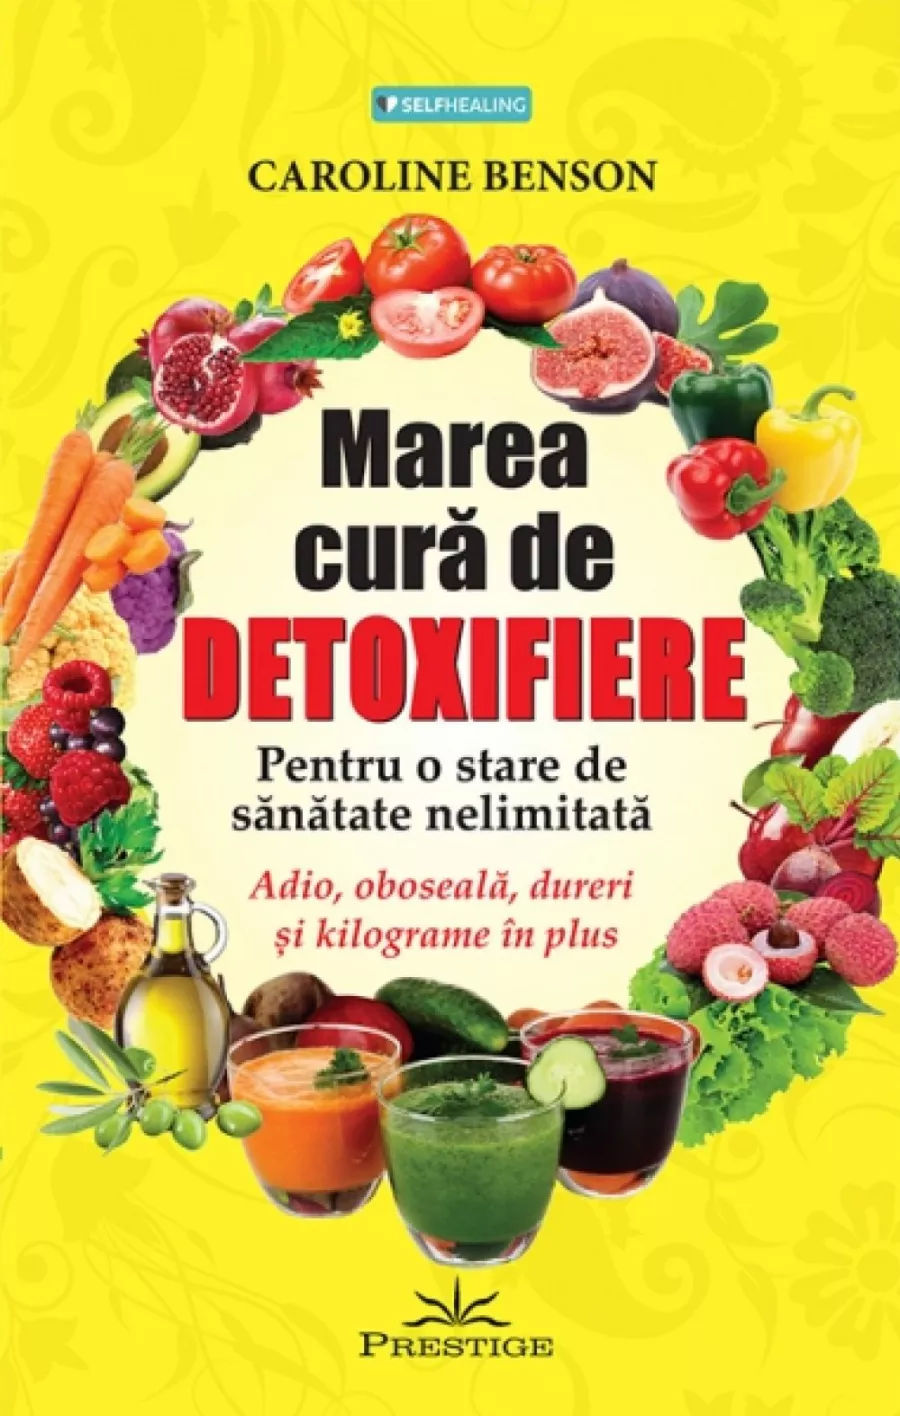 Adevarat sau fals? 5 Mituri despre Cura de detoxifiere | Delimano